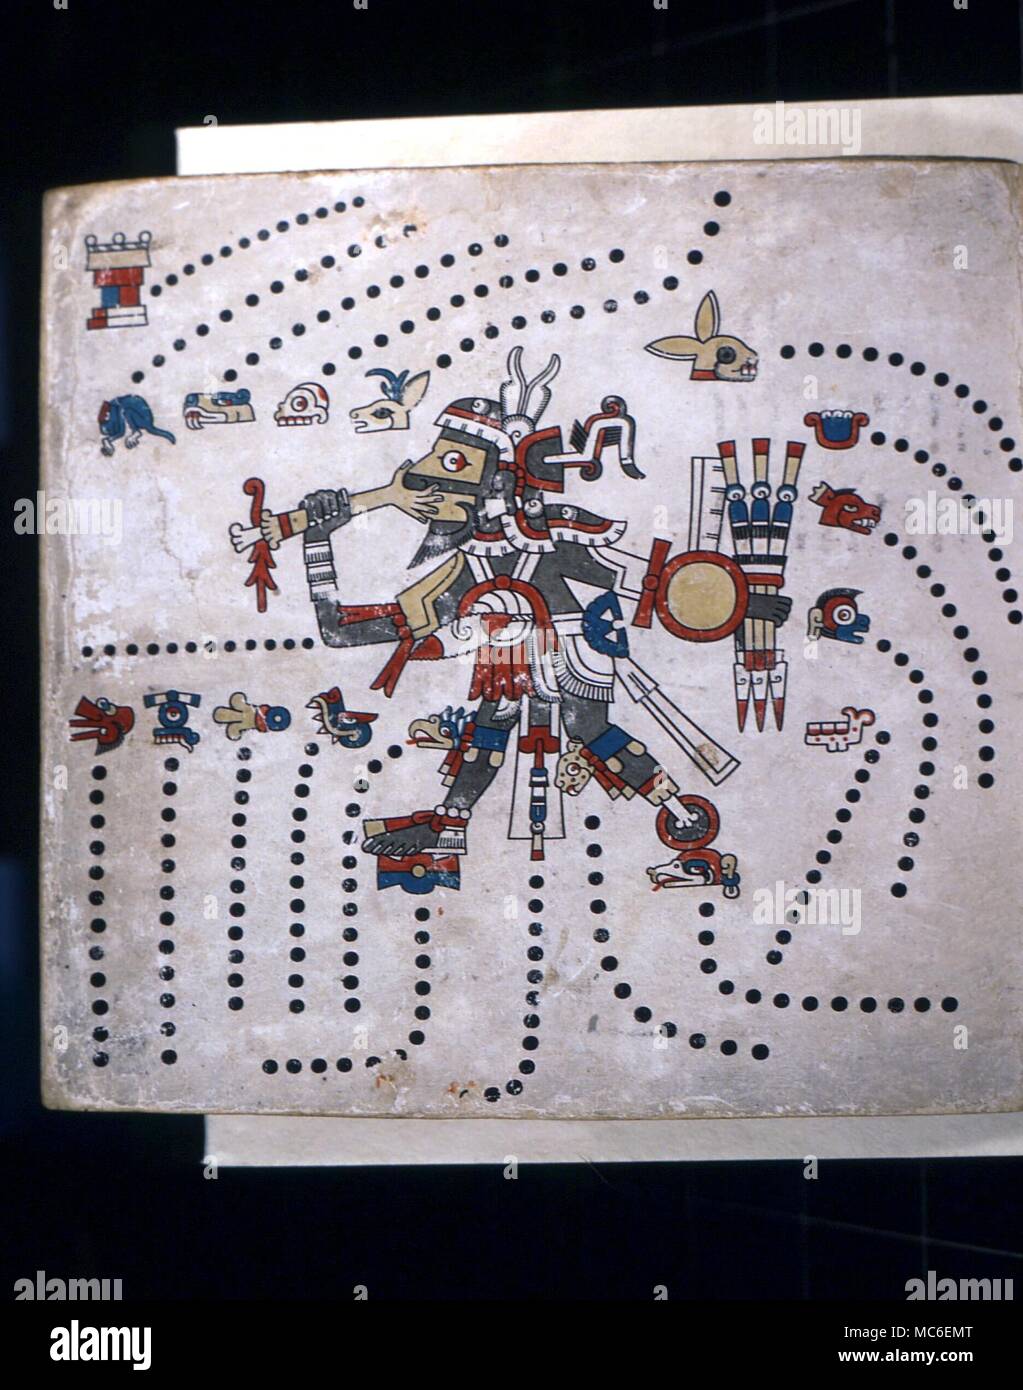 Calendriers - Calendrier aztèque, le dieu Tezcatlipoca, chef de la panthéon aztèque, avec son pied manquant, manger la paume d'un sacrifical victime. Il est entouré par les symboles des 20 jours, la base de la Calendrier aztèque. À partir de la Commission du Codex Fejervary-Mayer, Liverpool Banque D'Images